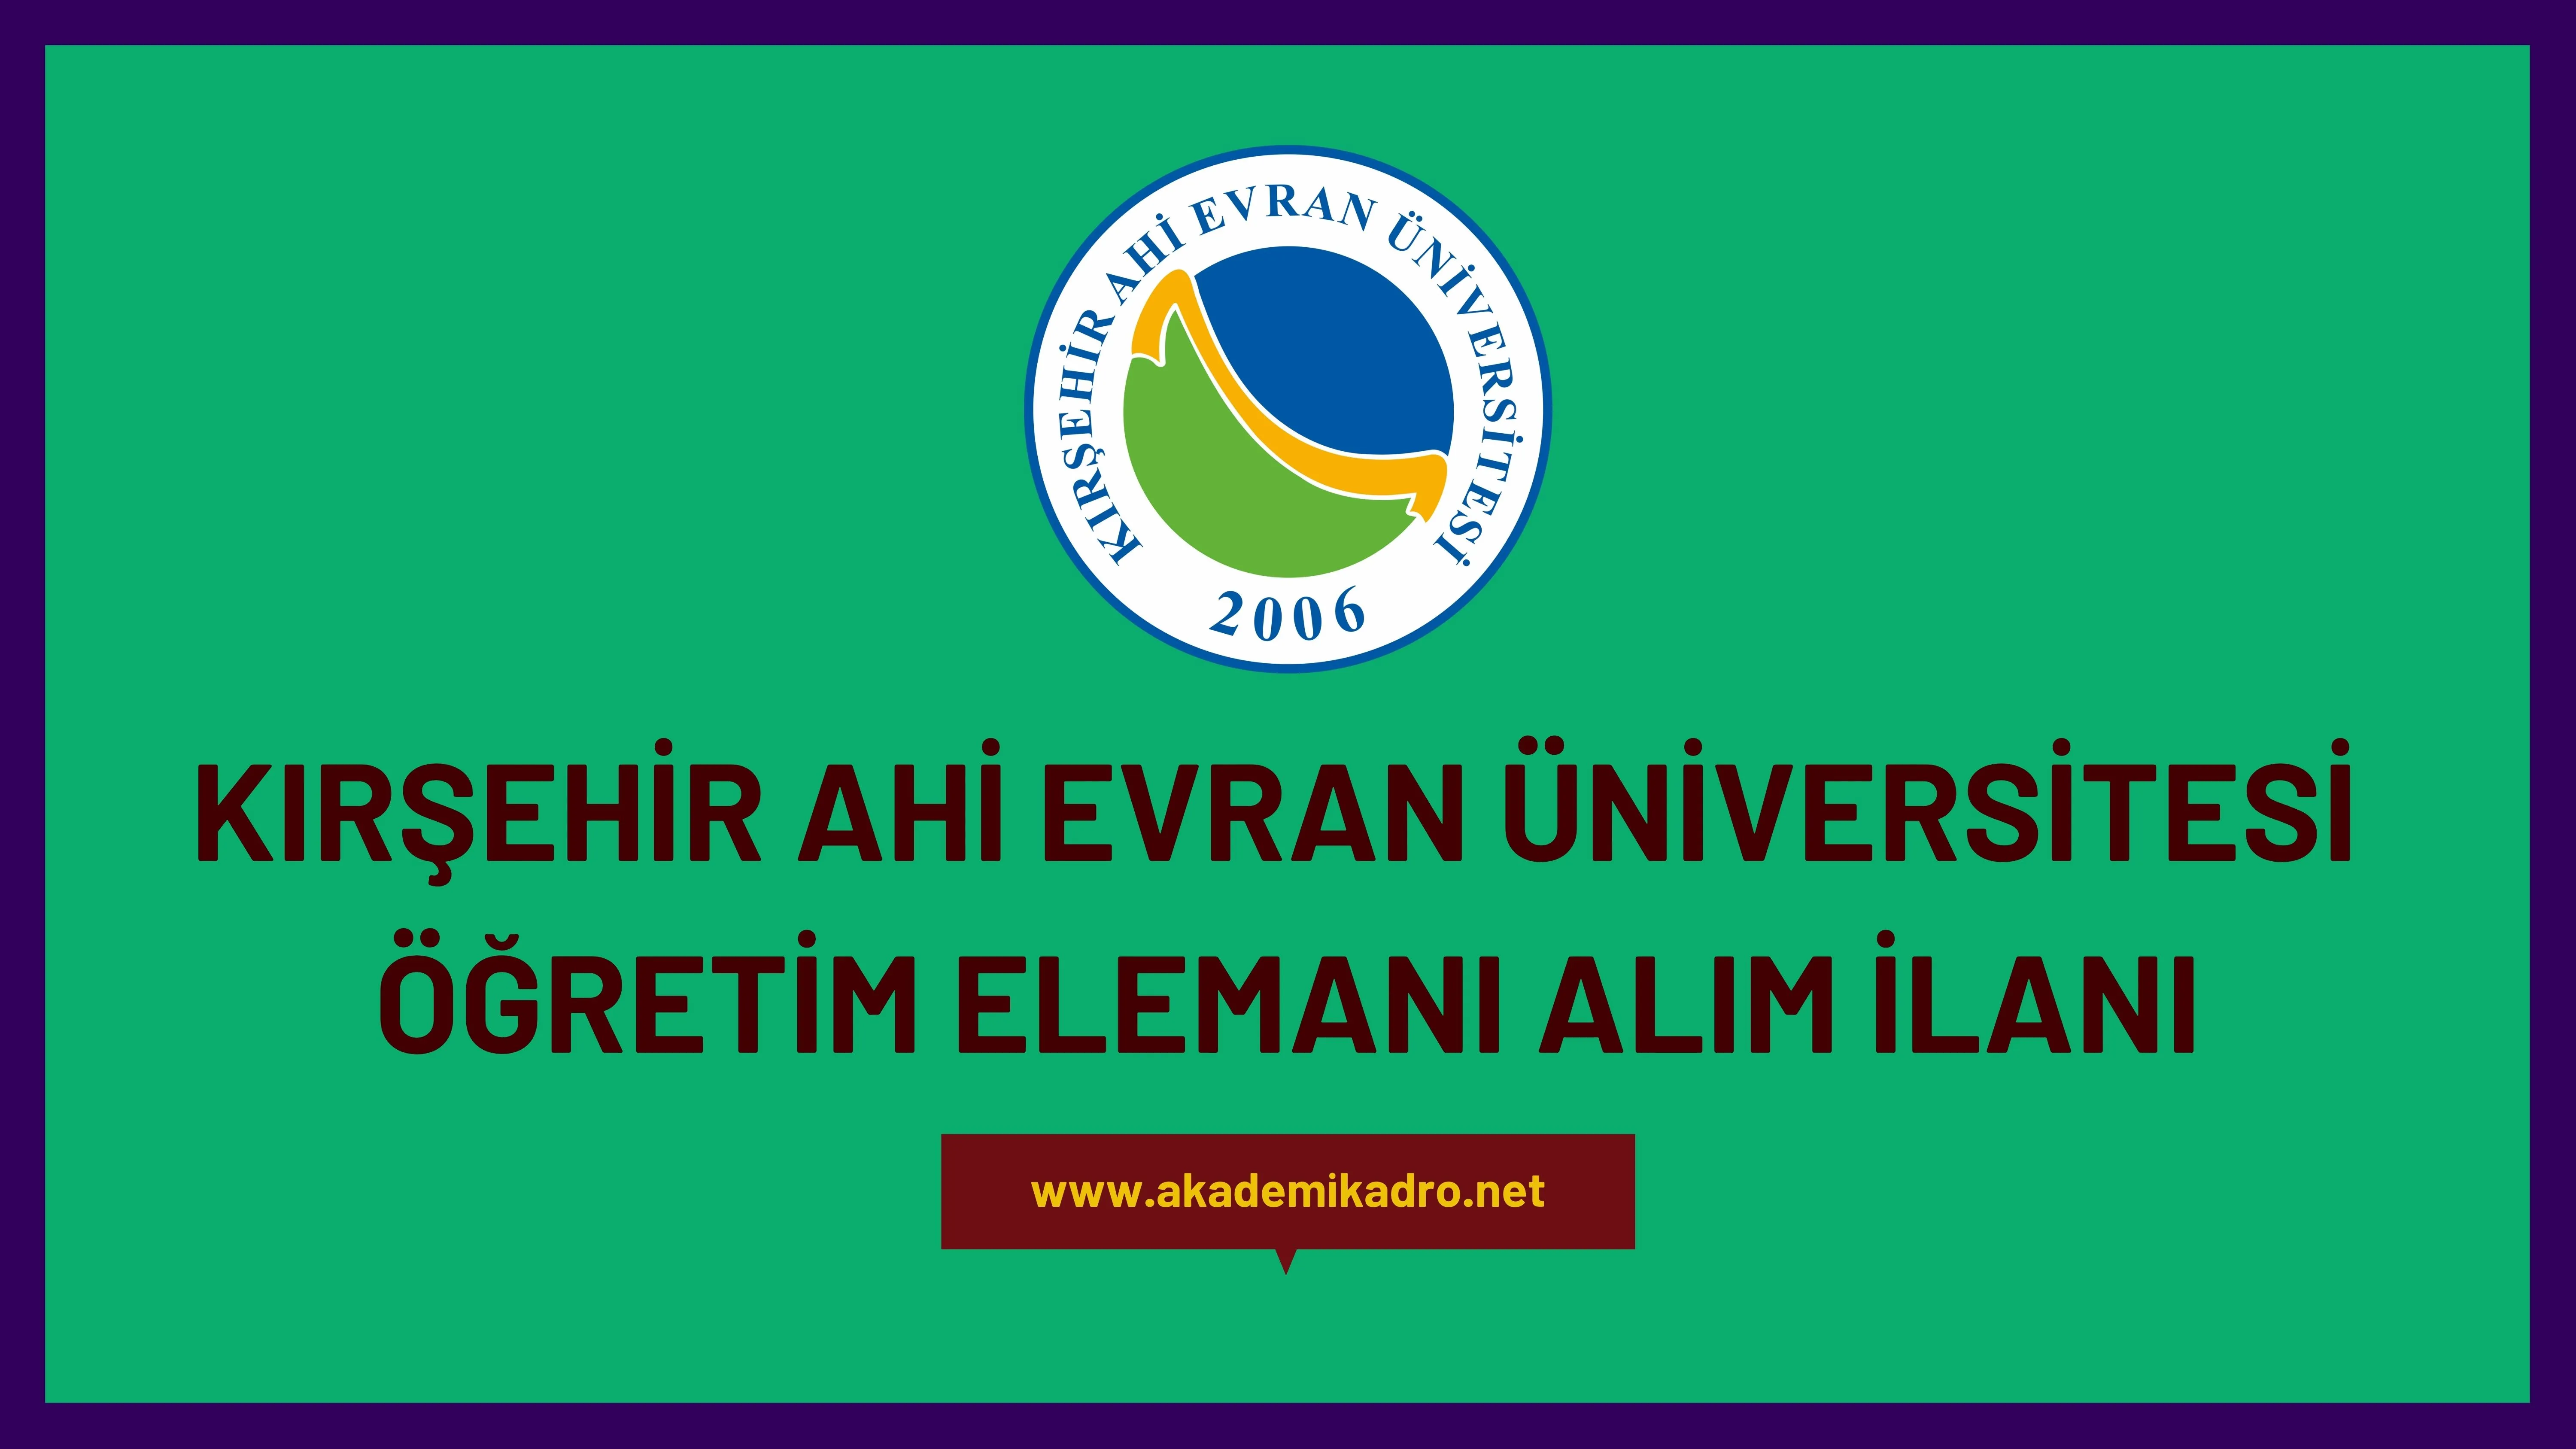 Kırşehir Ahi Evran Üniversitesi 7 Araştırma Görevlisi, 7 Öğretim görevlisi ve 41 öğretim üyesi alacaktır.